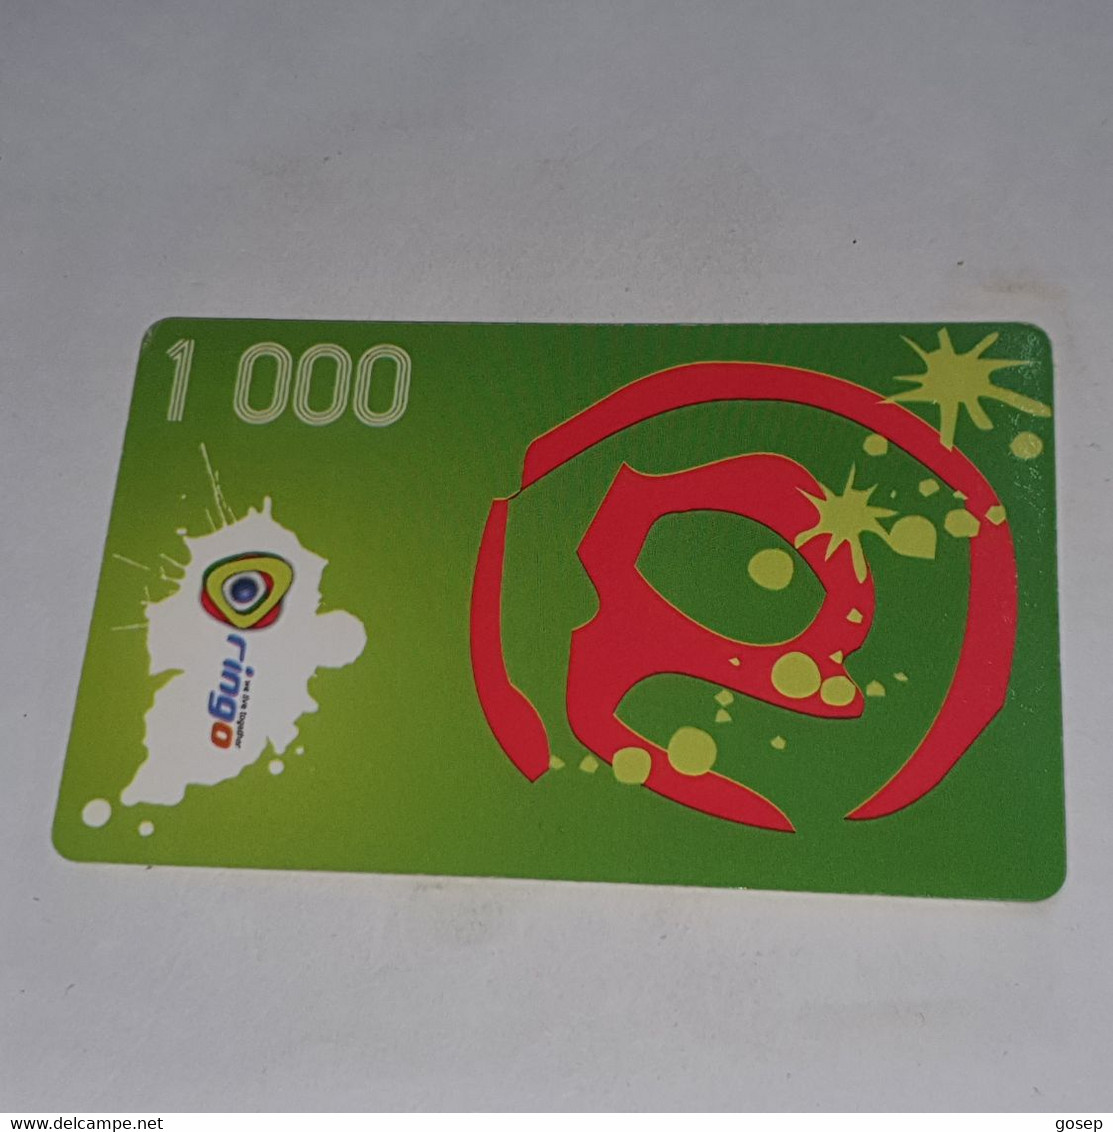 Cameroon-(CAM)-RINGO-(28)-(1.000)-(DUMMY)-(11/2009)+1card Prepiad - Cameroon